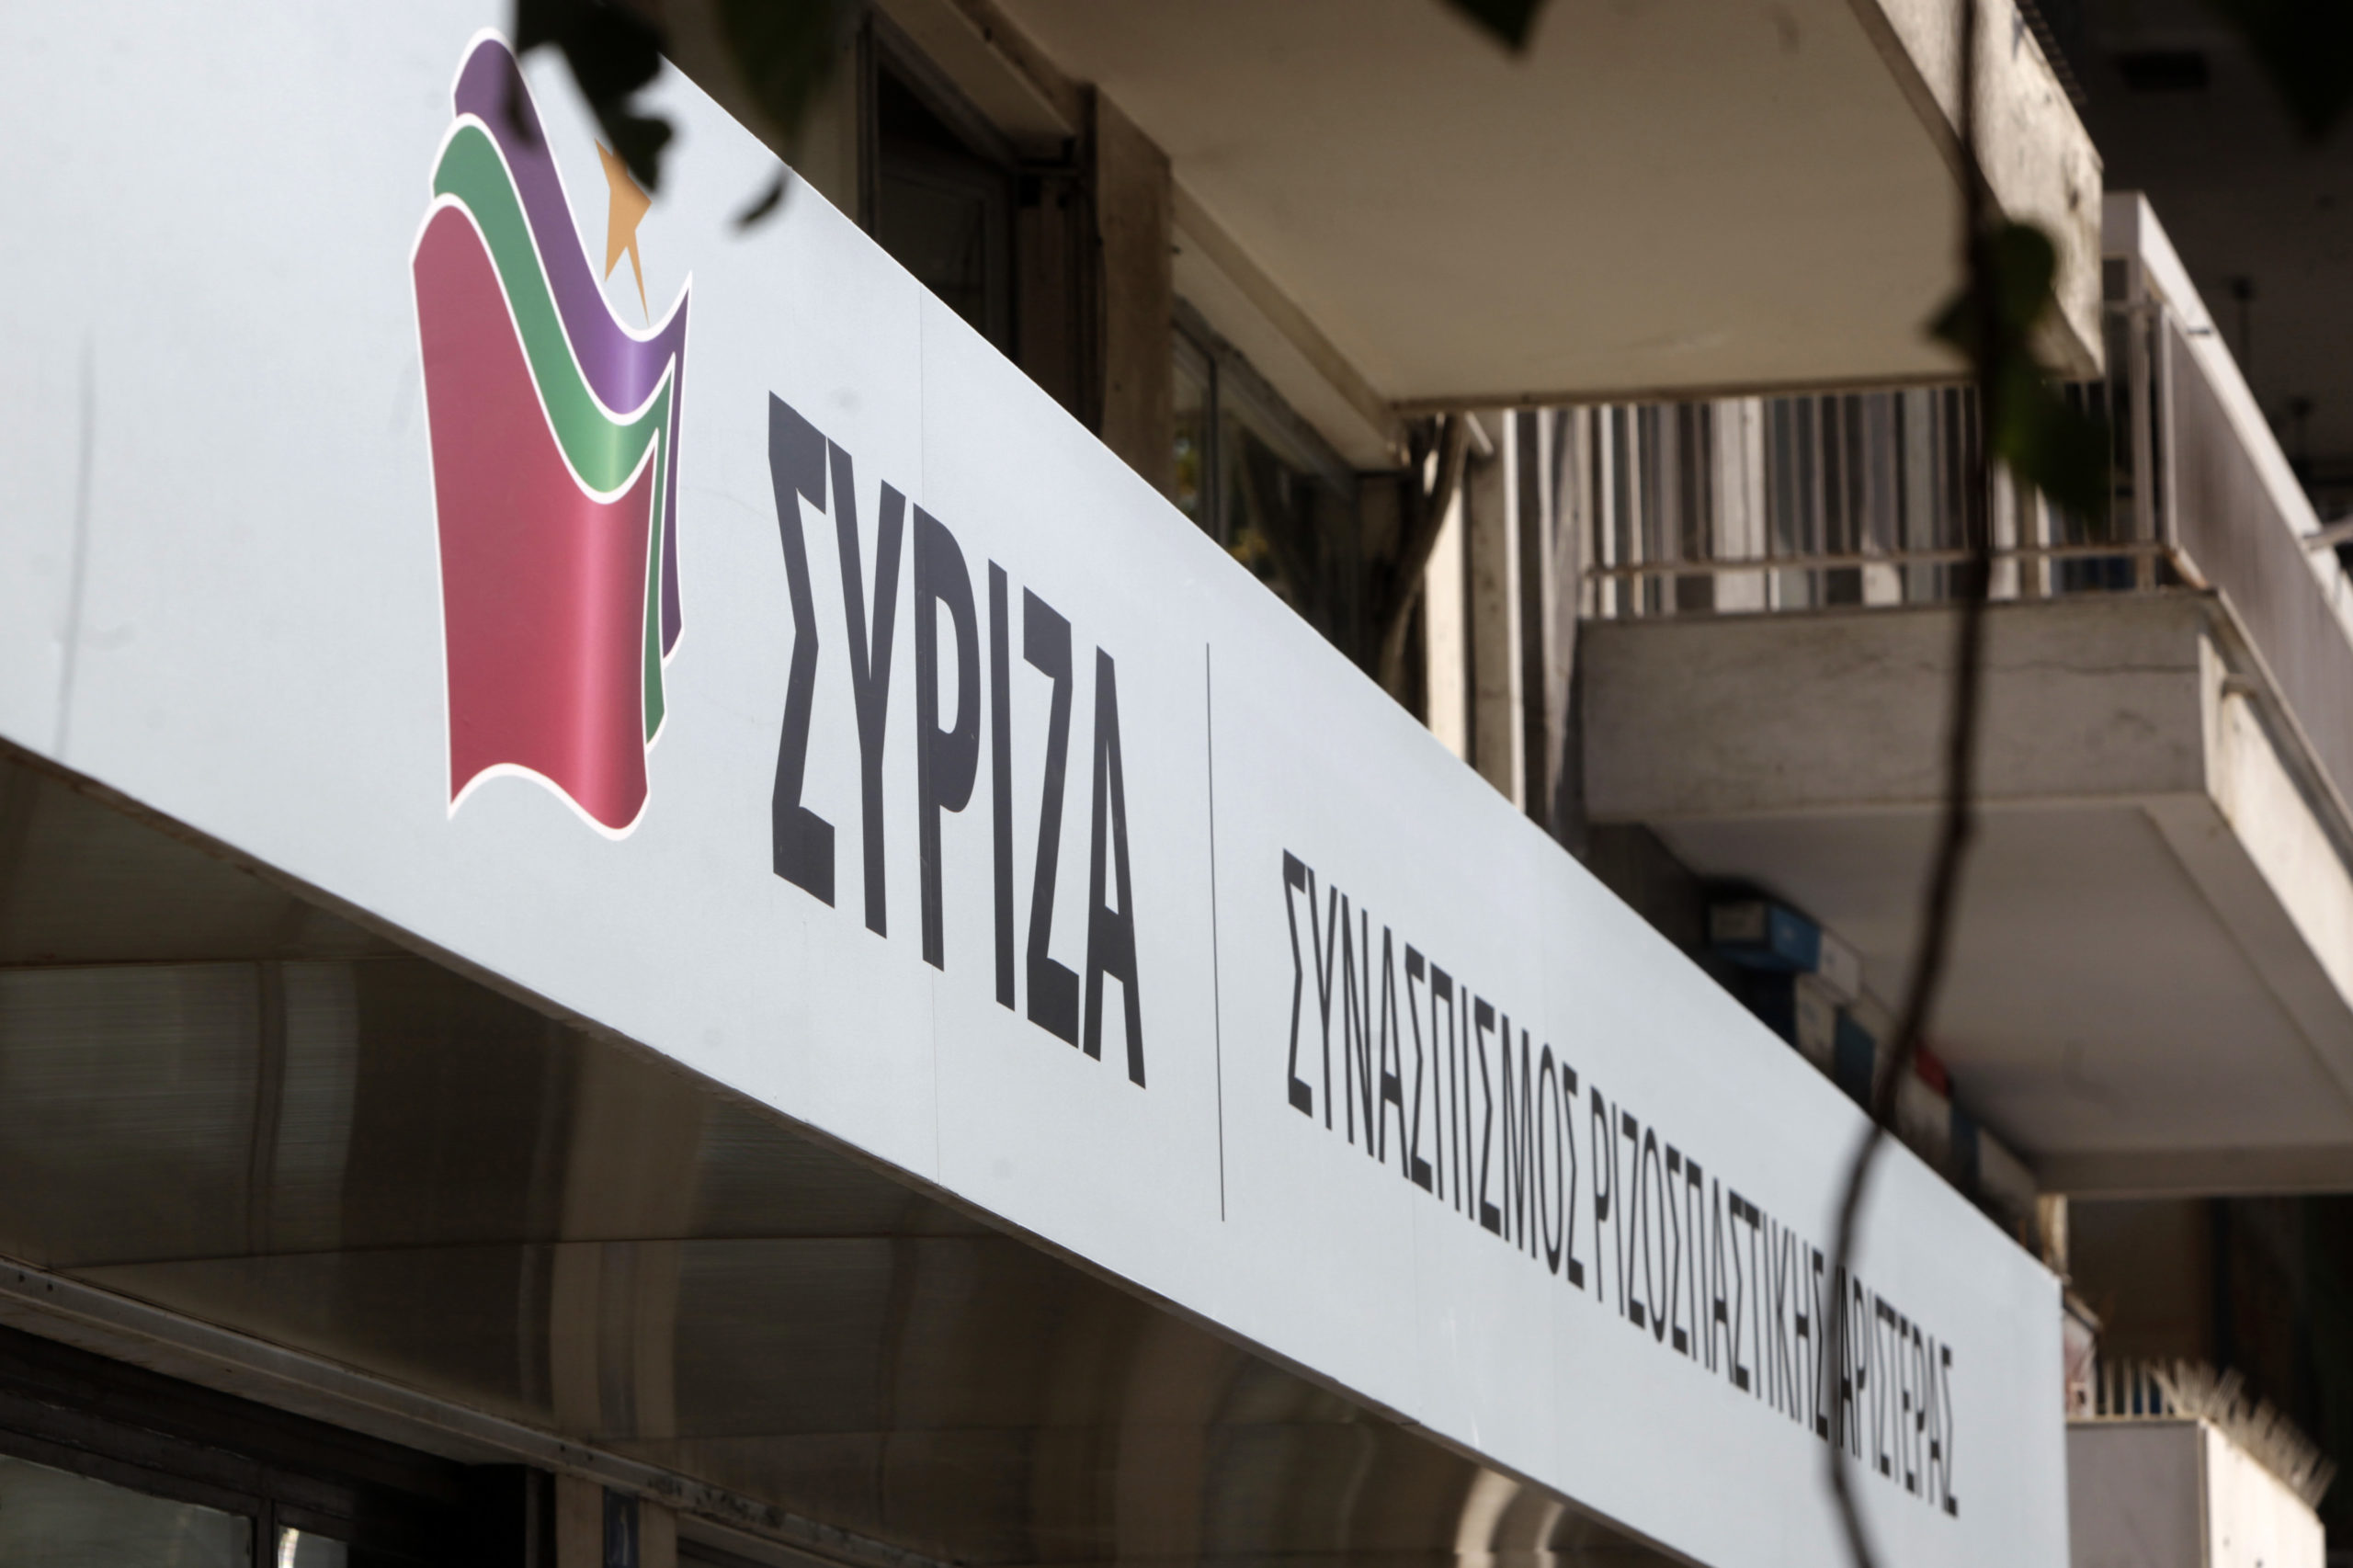 Νομιμοποίηση της βιομηχανικής κάνναβης για ιατρικούς λόγους ζητούν βουλευτές του ΣΥΡΙΖΑ